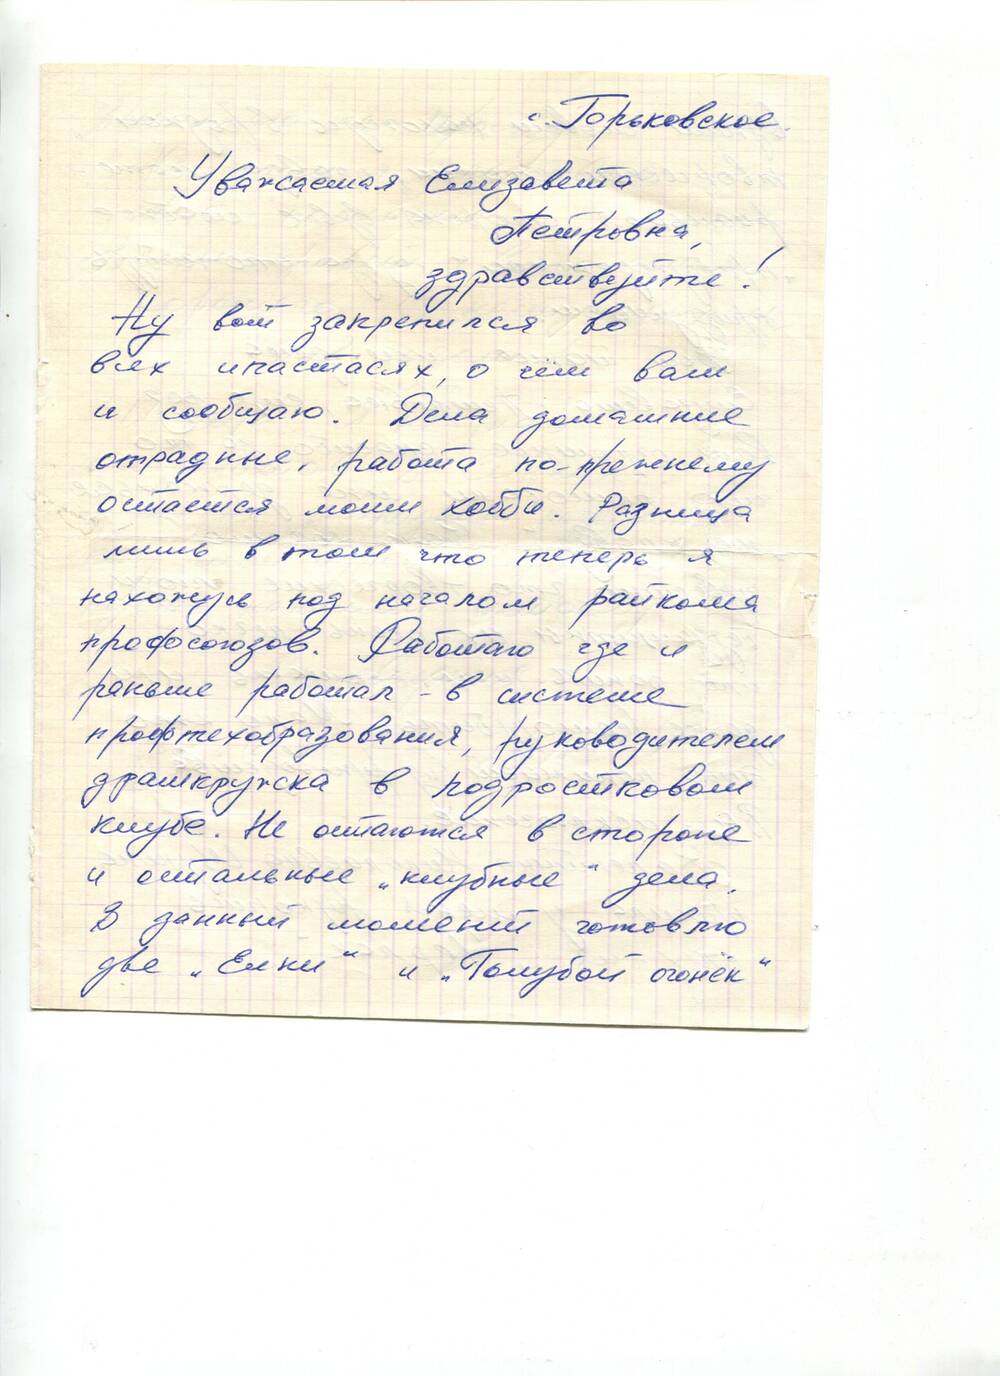 Письмо в конверте с рукописью стихотворения Черлак от Власова Валерия на имя зав. отделом культуры Компас Е.П.